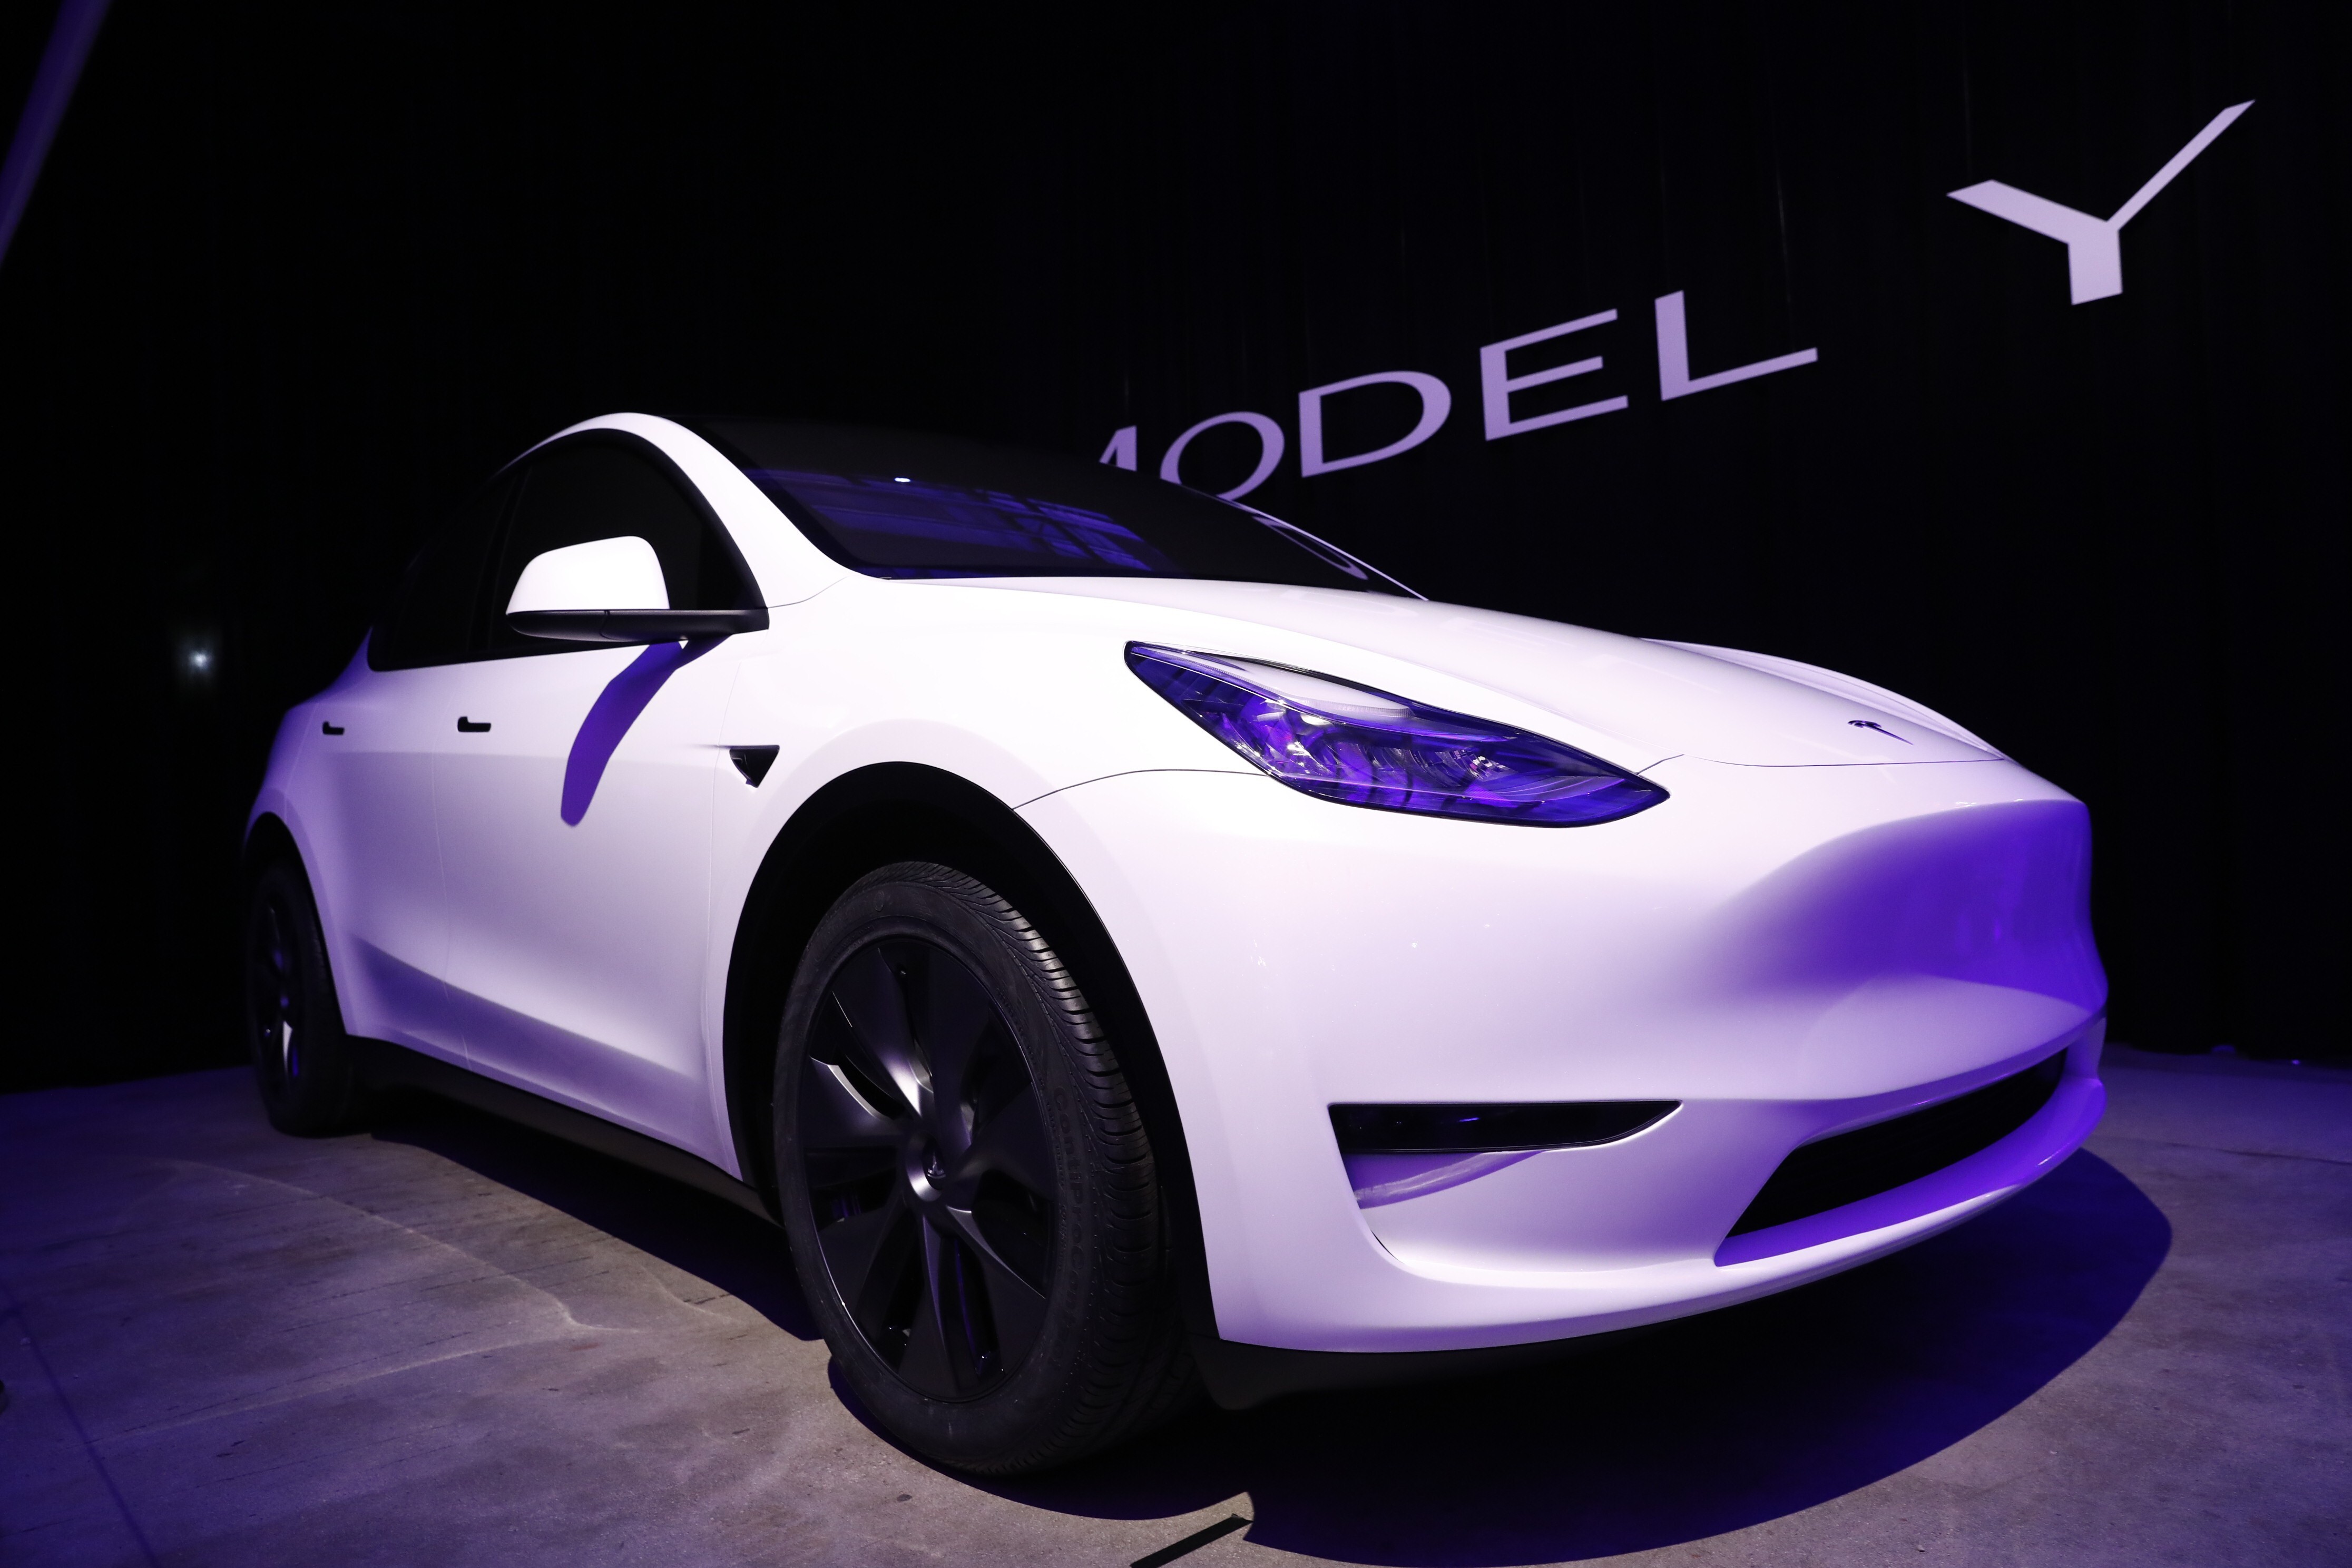 Tesla Starts Delivering China-Made Model Y Crossover - WSJ